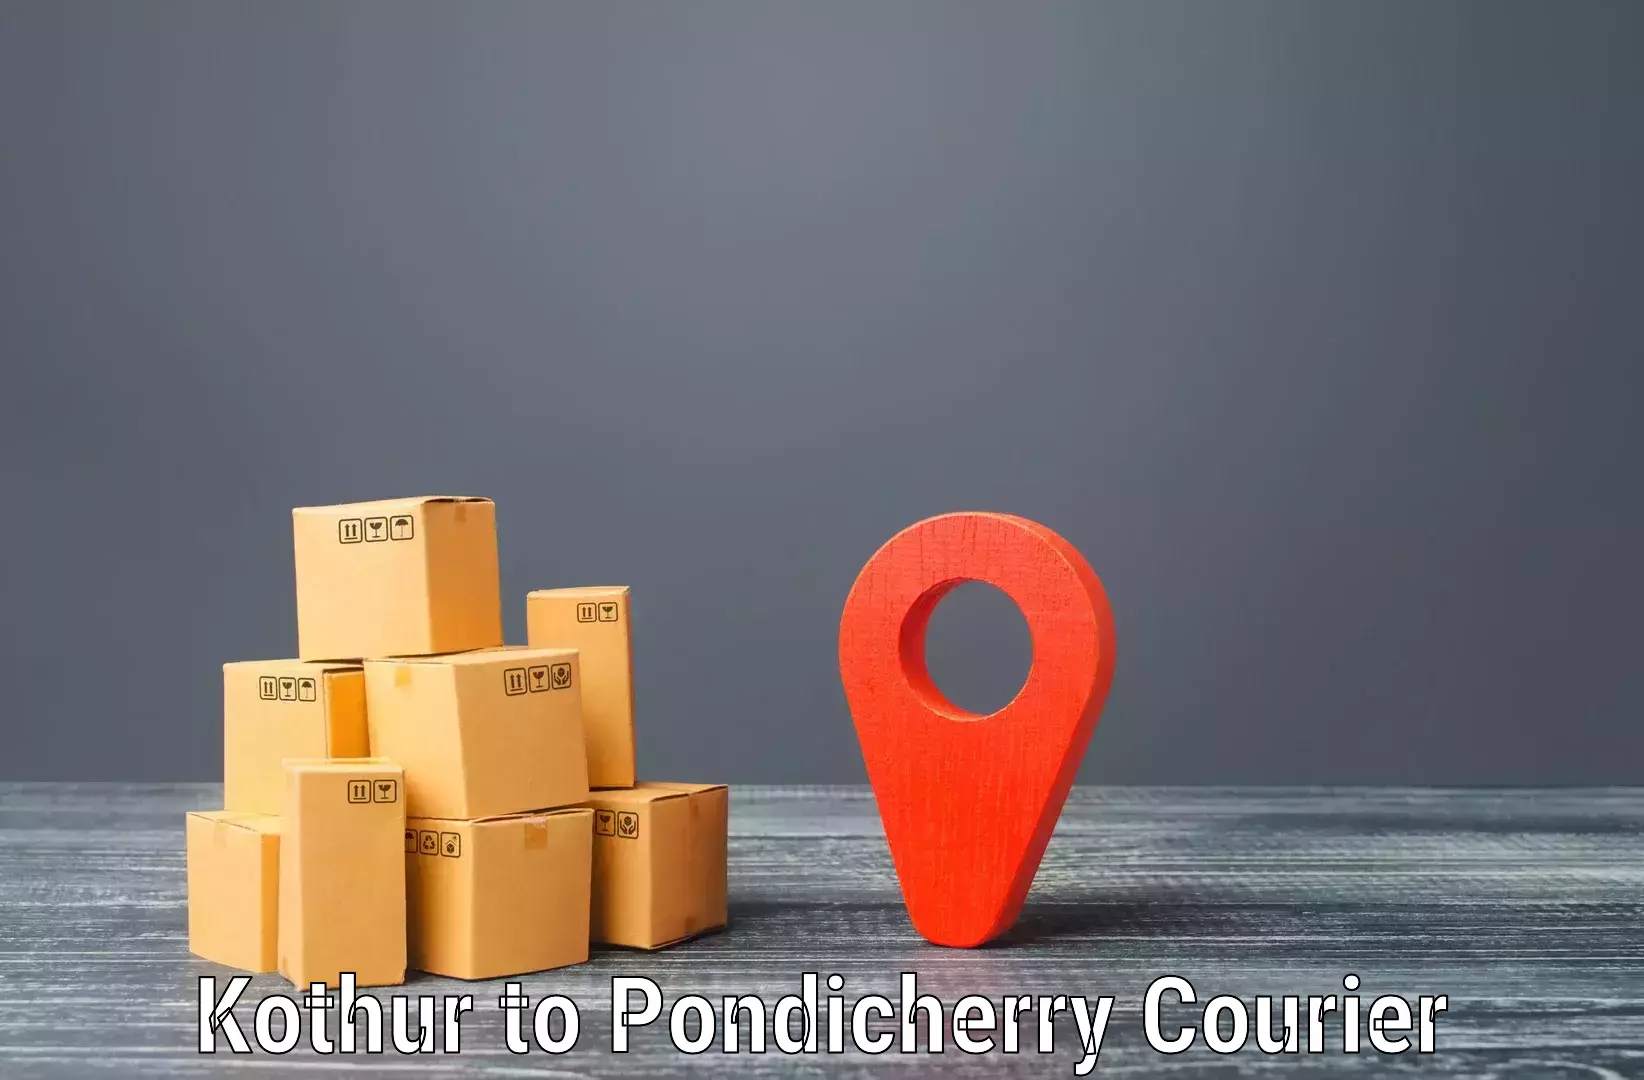 Premium courier services Kothur to NIT Puducherry